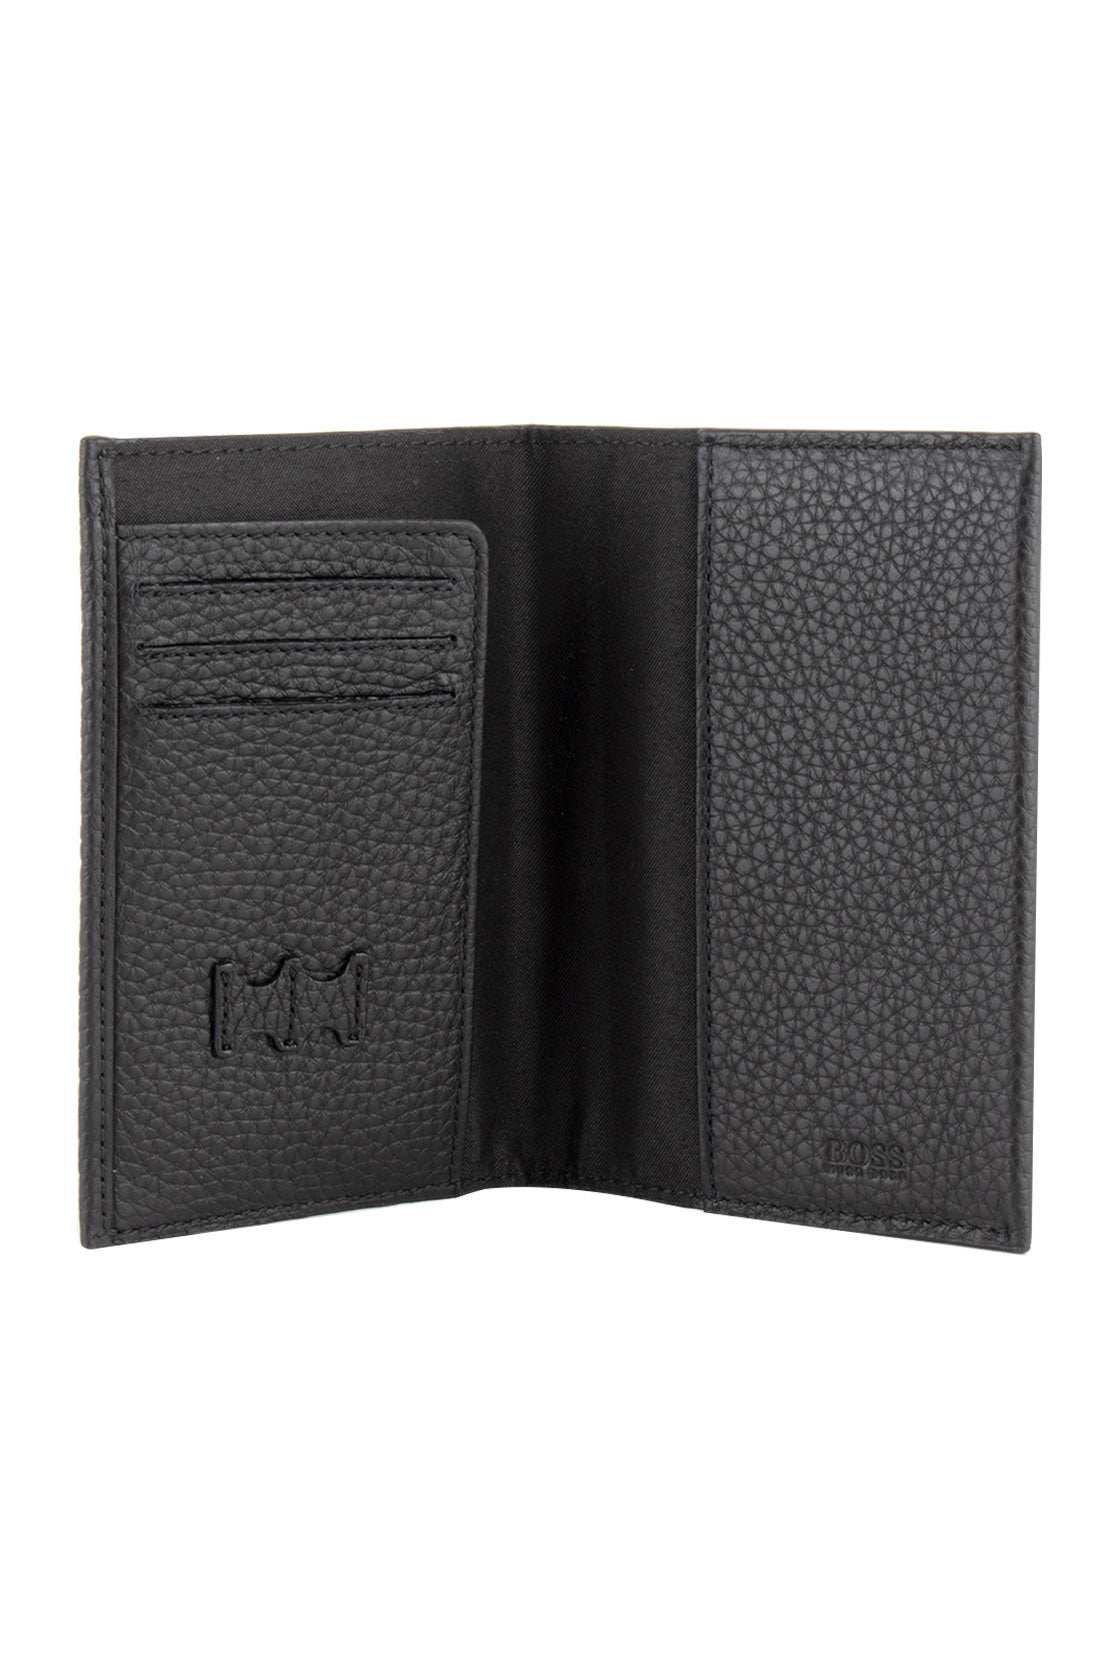 Hugo Boss Crosstown Passport Leather Wallet Black